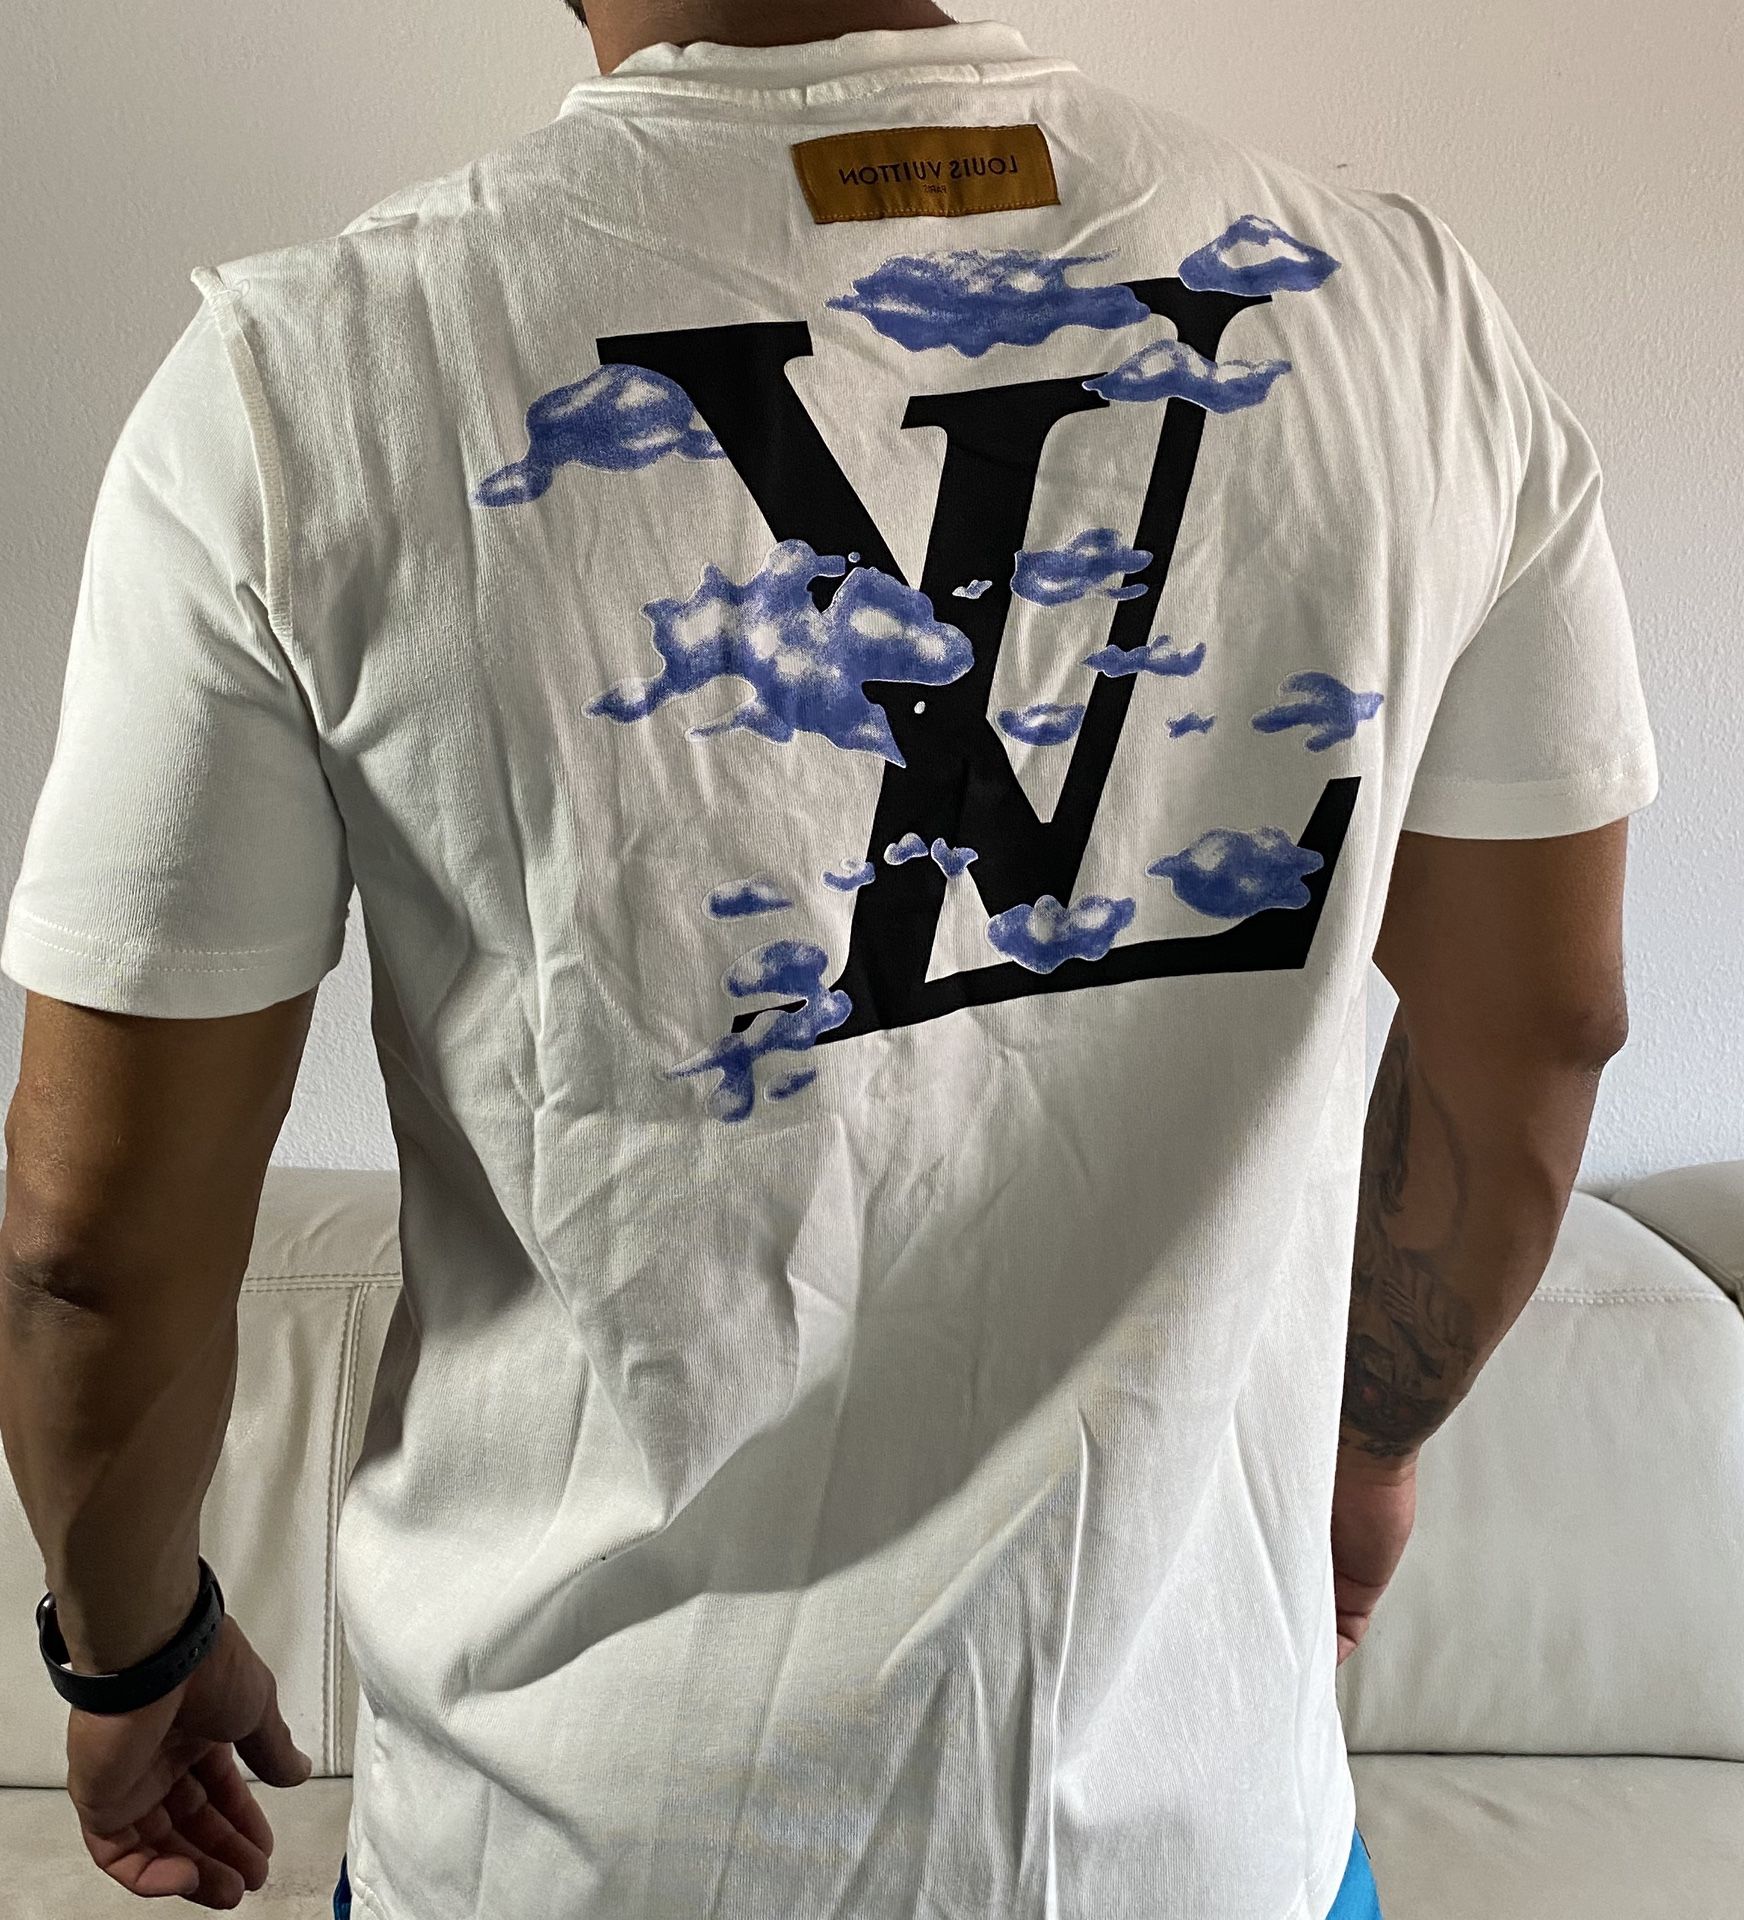 Louis Vuitton t-shirt